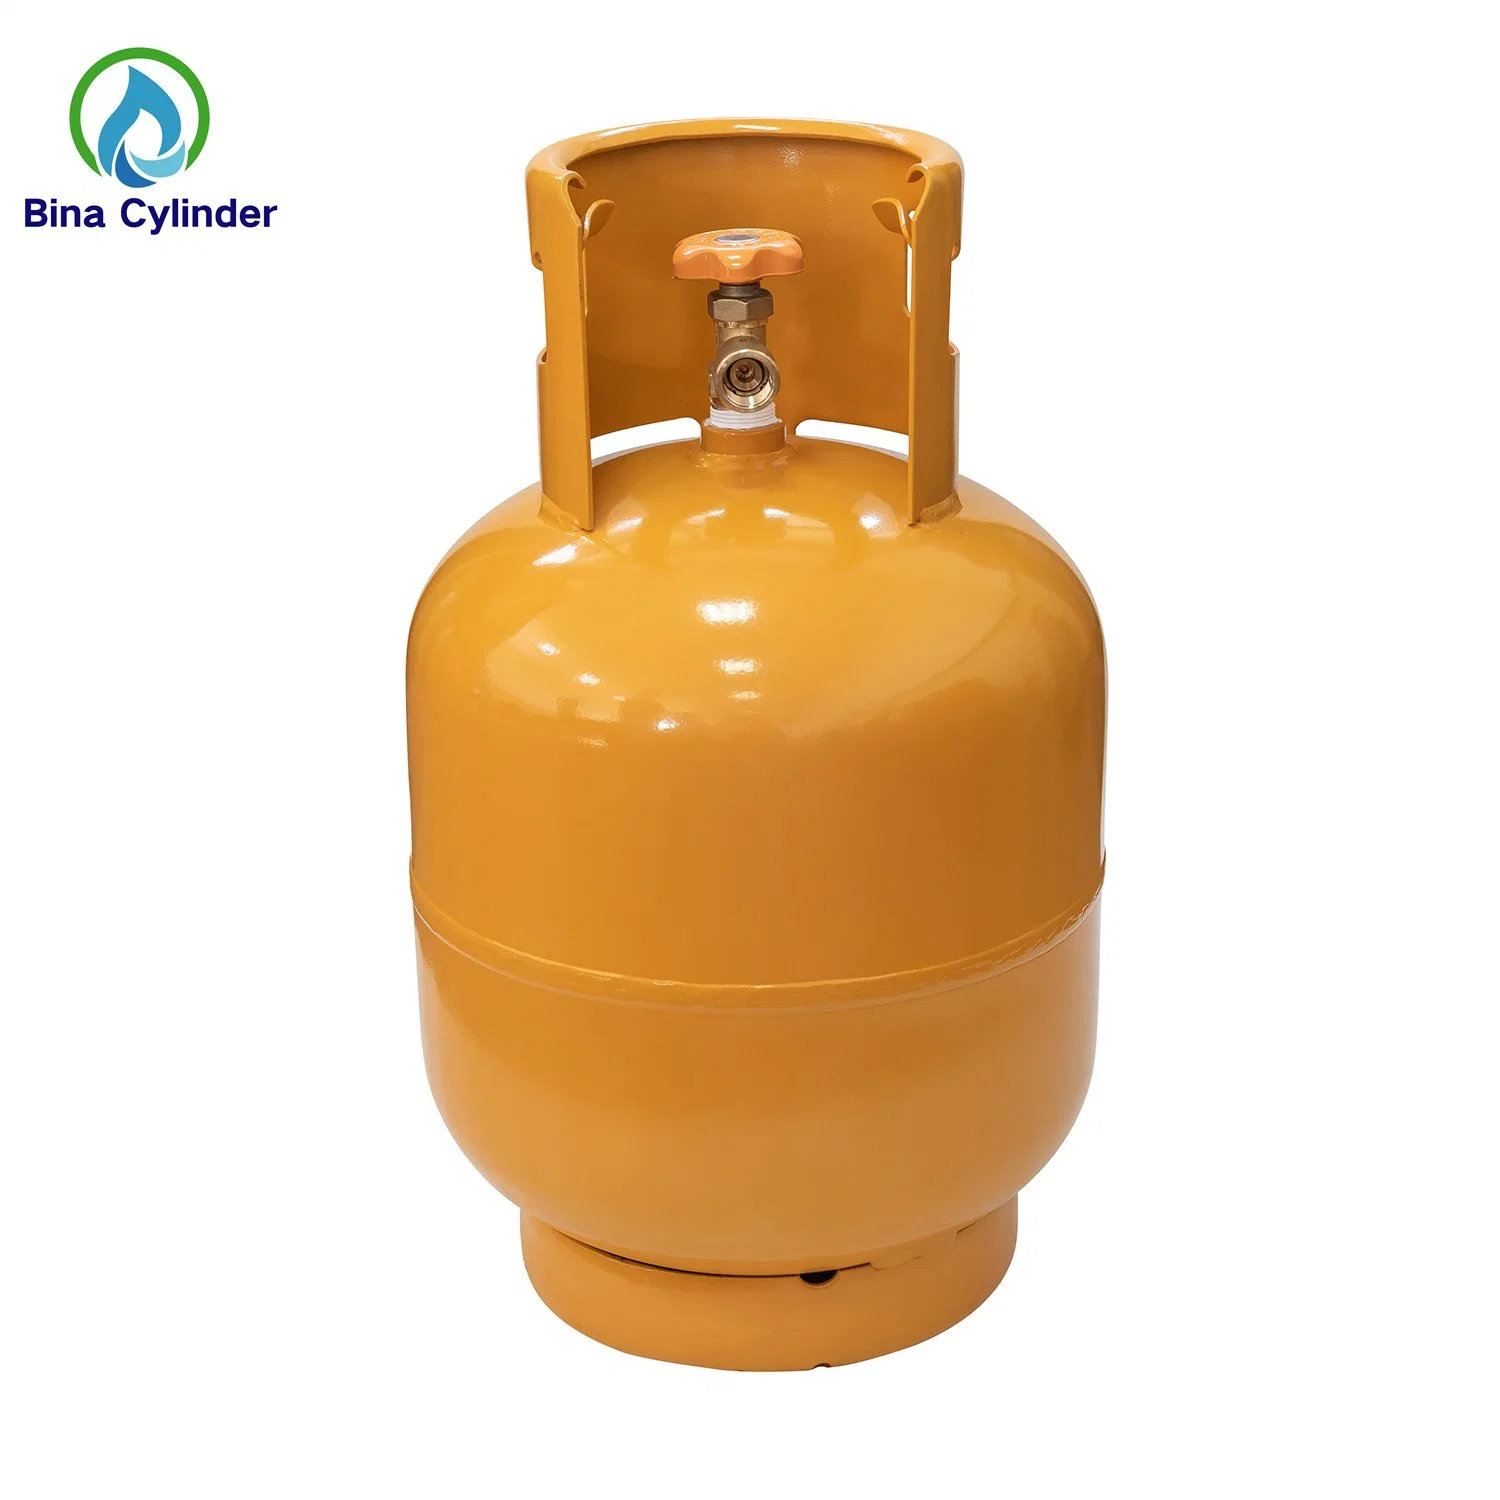 Bina 3kg/5kg/6kg/10kg/12.5kg/15kg Refillable Filling Empty LPG Cylinder Accessories Nigeria Cooking Gas Cylinder for Home Use